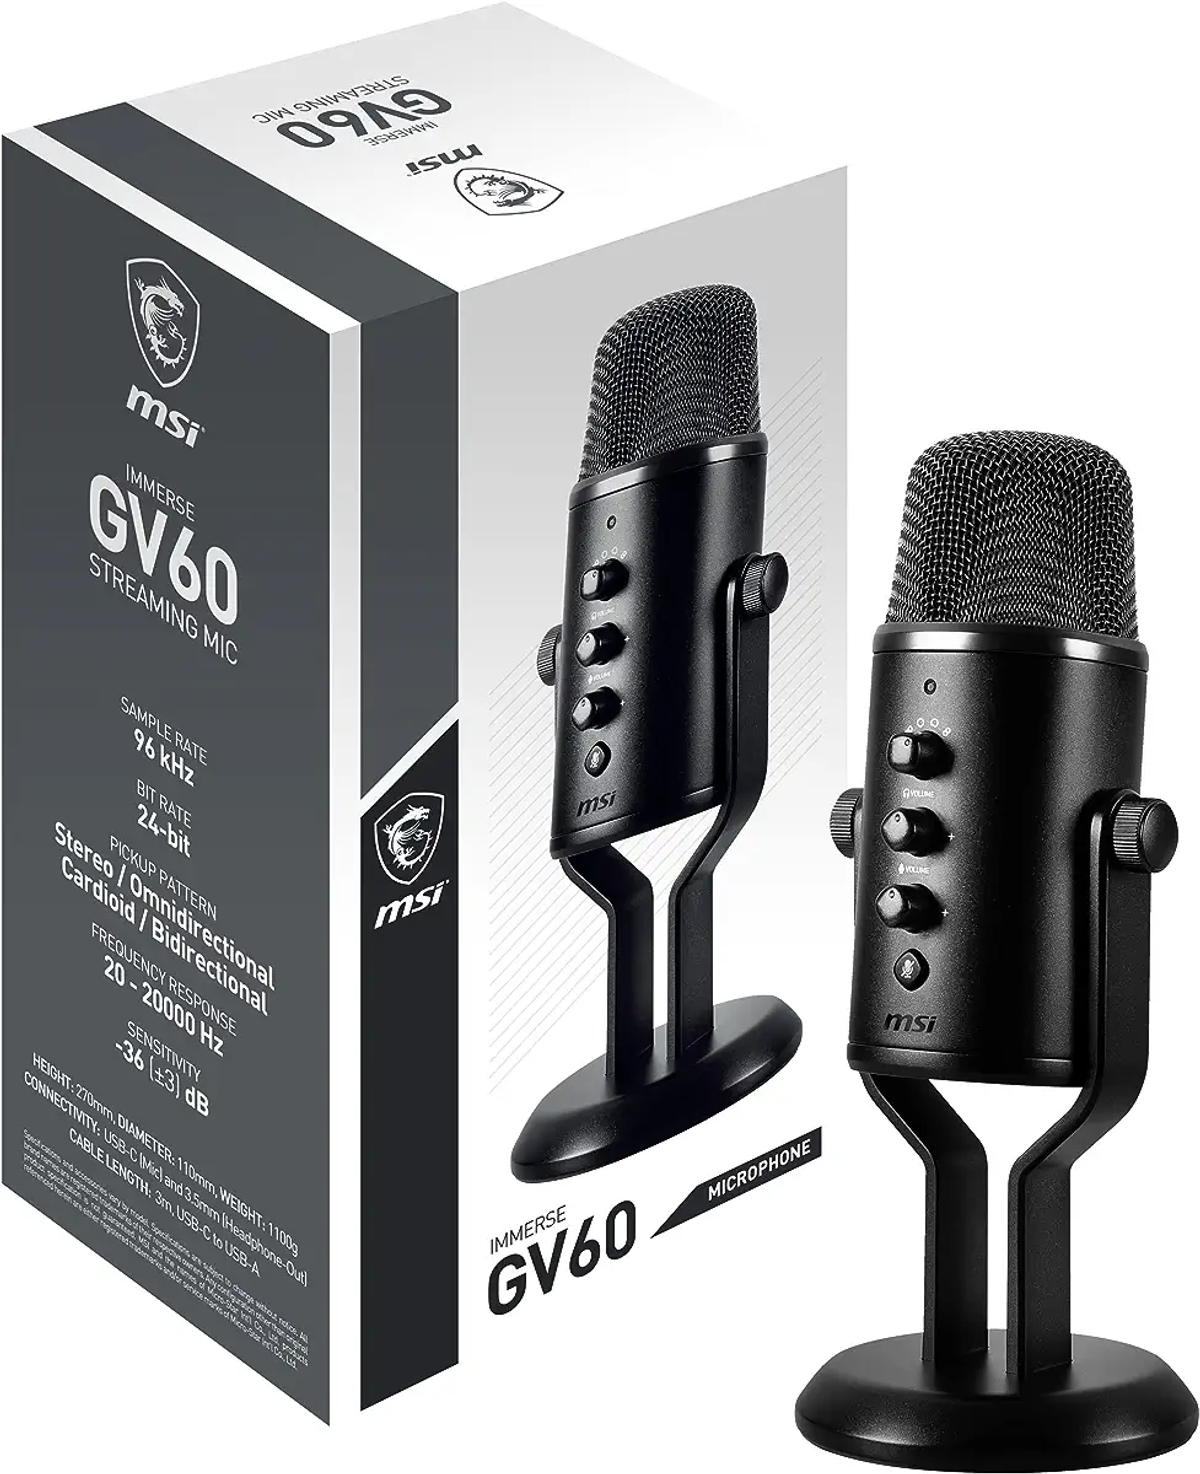 STREAMING Schwarz Mikrofon, MSI OS3-XXXX002-000 GV60 Streaming IMMERSE MIC